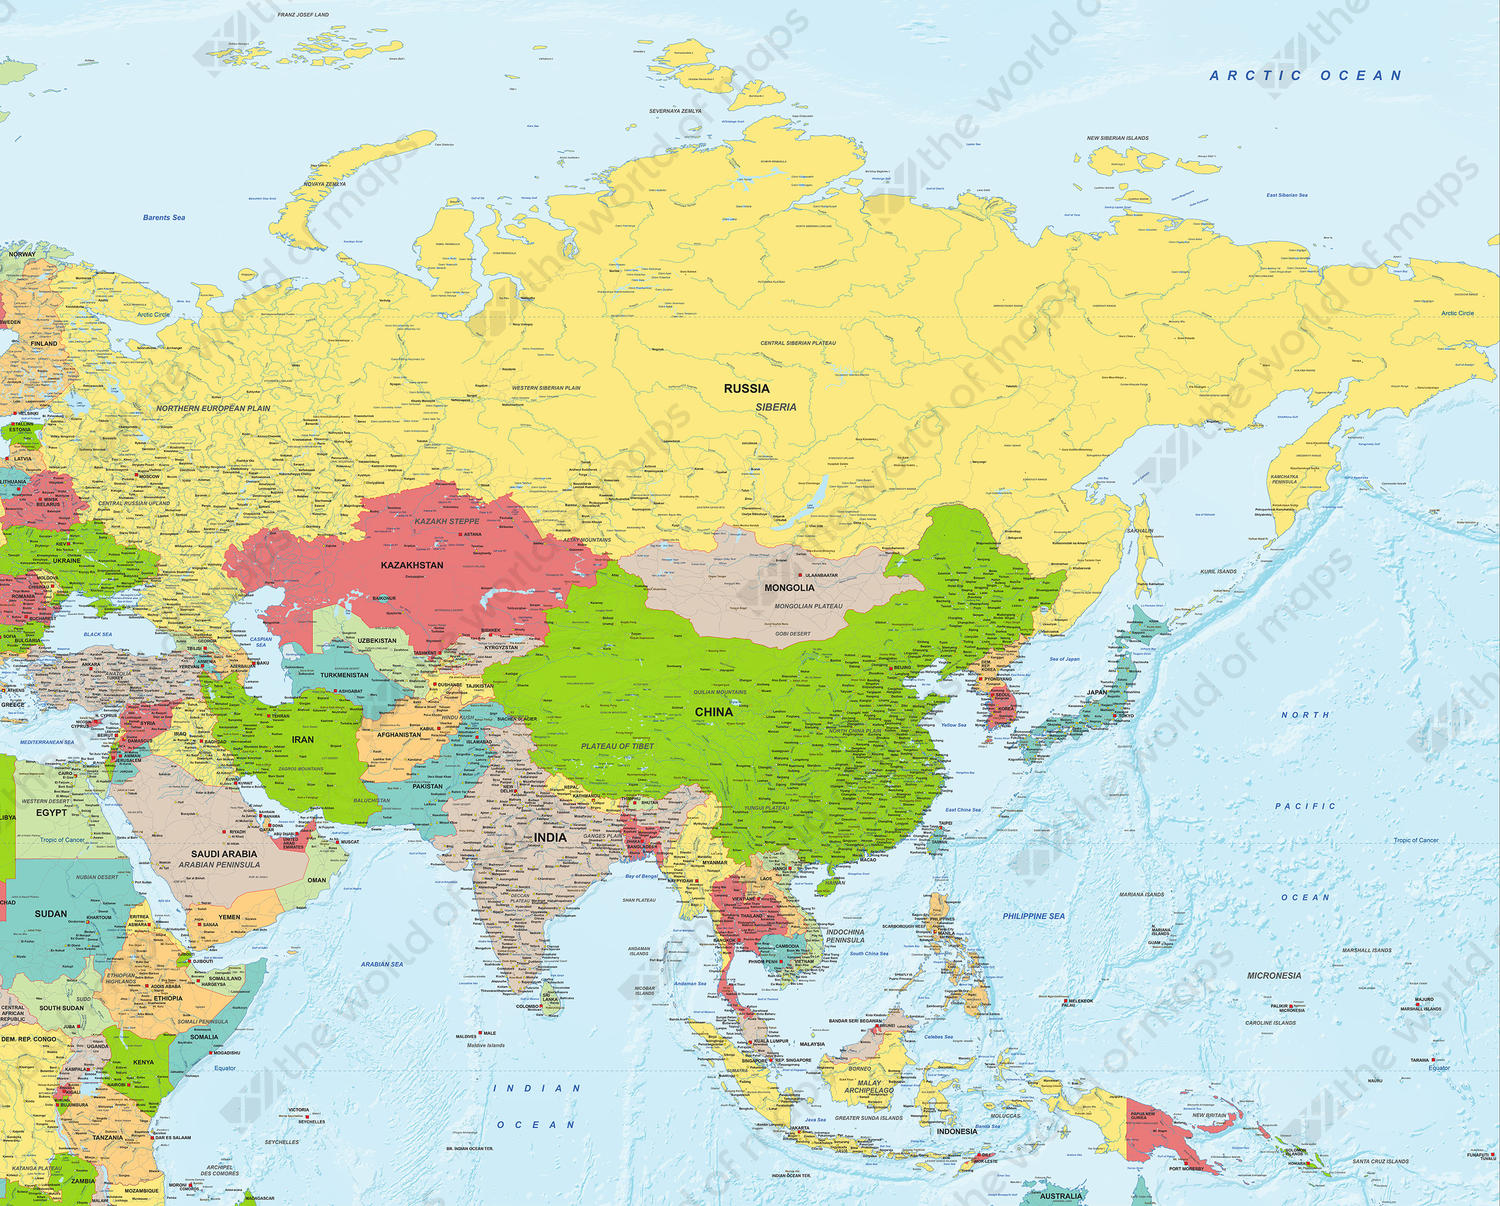 Digital Political Map Asia 1283 | The World of Maps.com